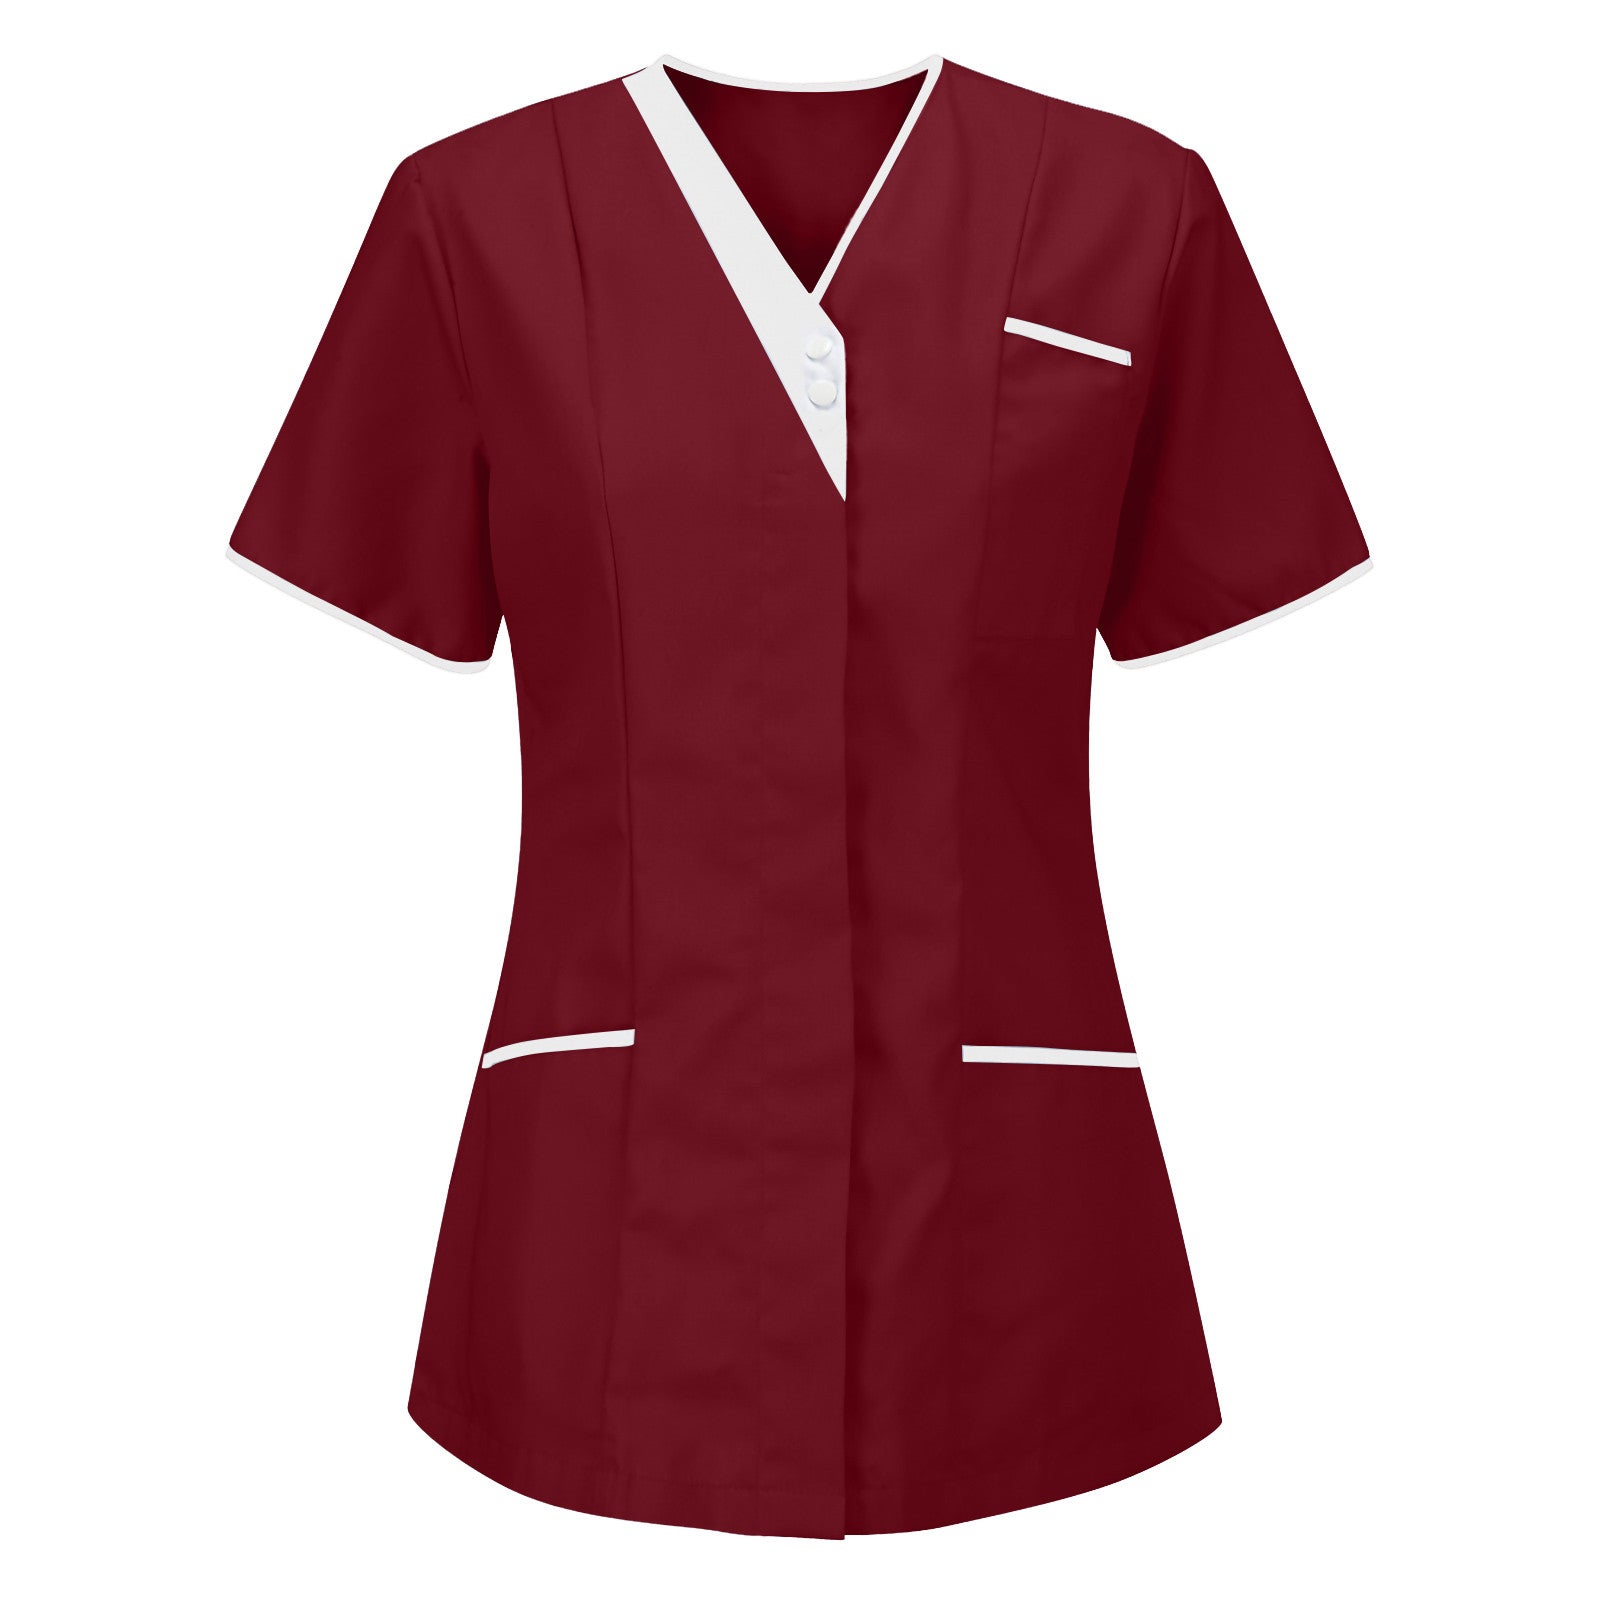 Nursing Scrubs Tops For Women